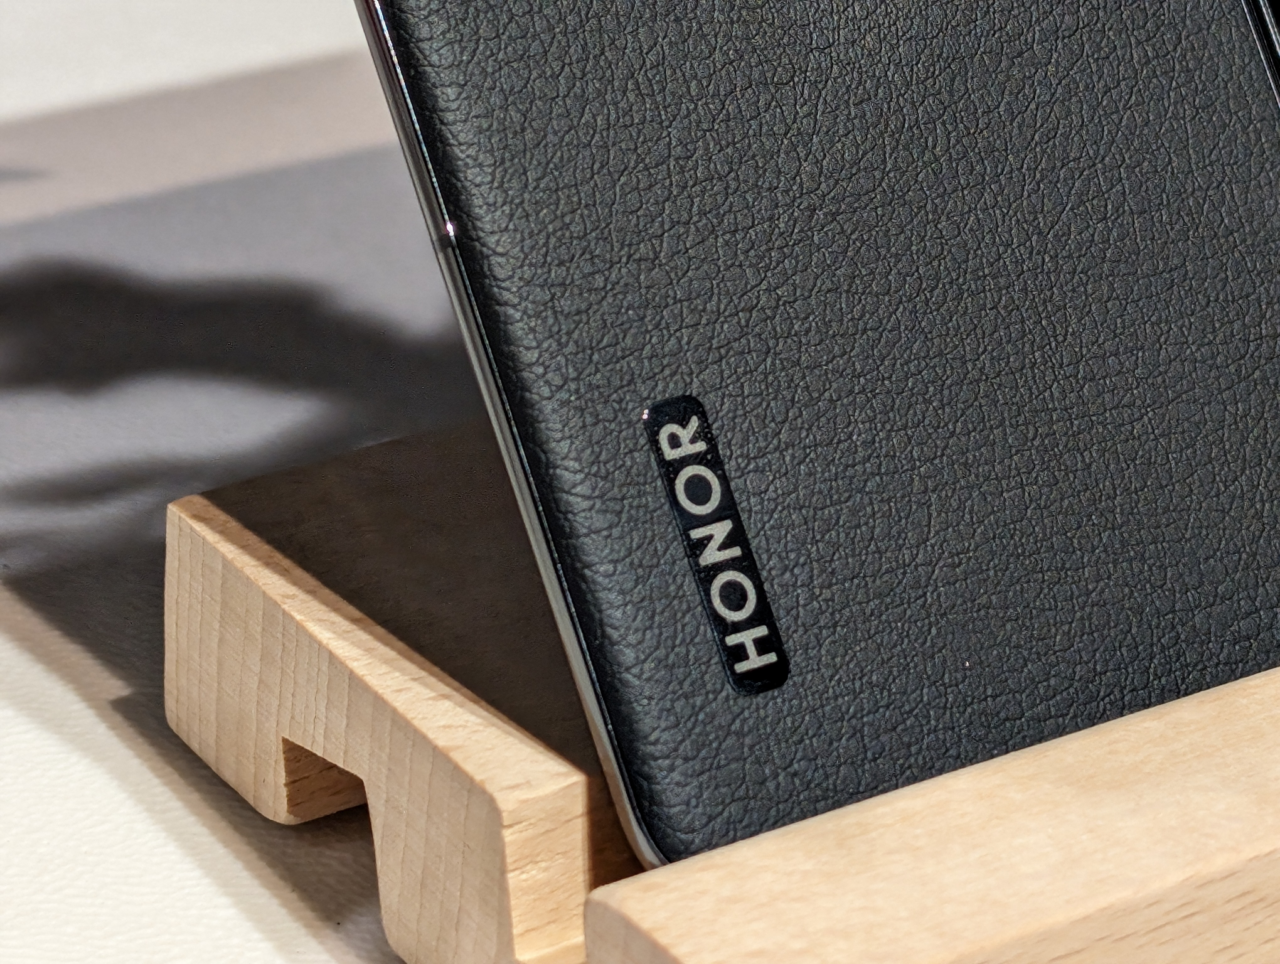 Czarny skórzany etui na smartfon z wygrawerowanym logo "HONOR", oparty na drewnianym stojaku.